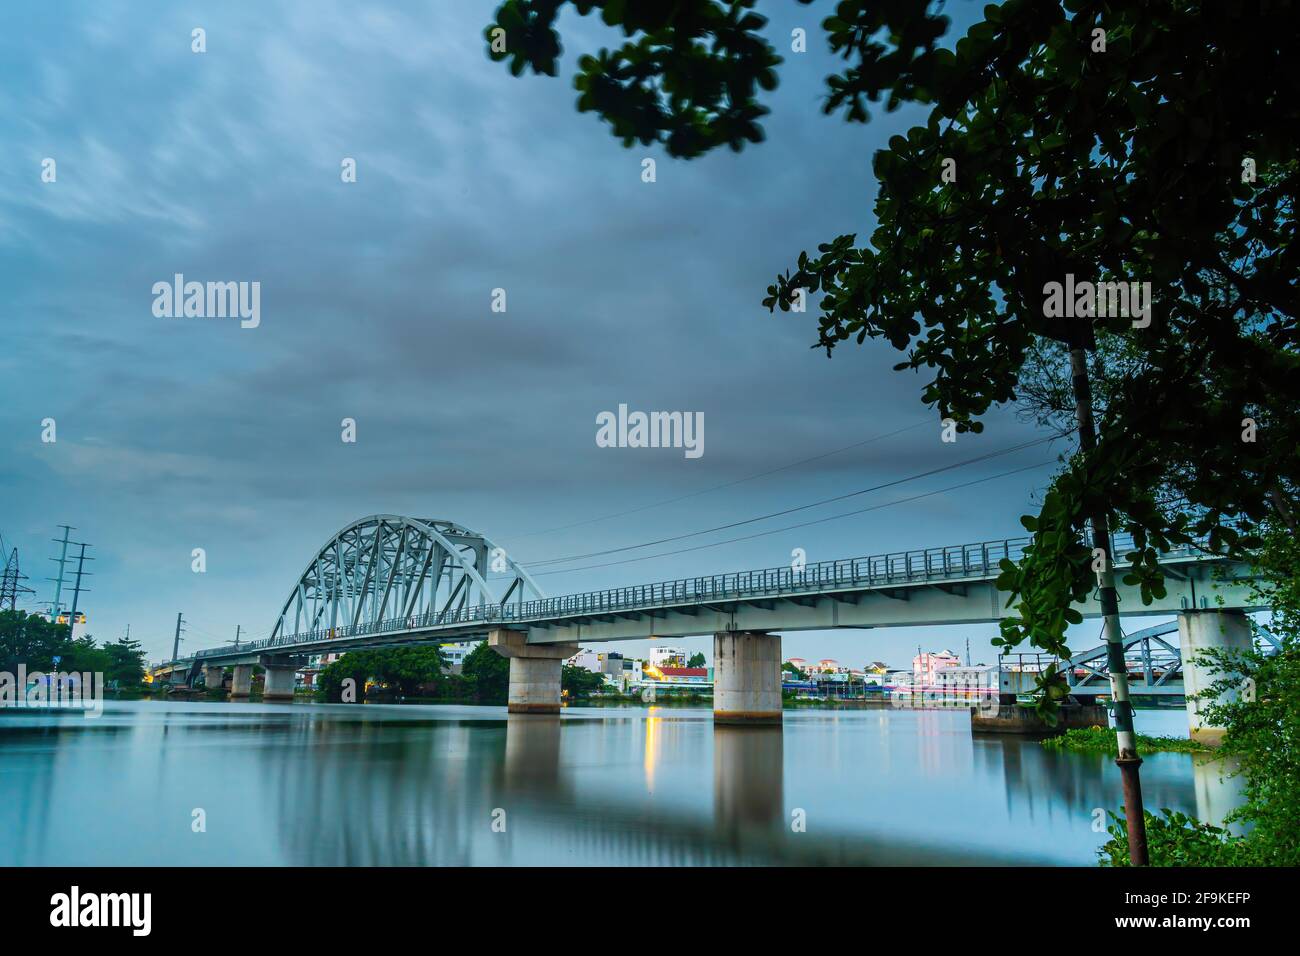 Wunderschöner Sonnenuntergang auf der Binh Loi Brücke, die nachts neu und alt ist, in der Hauptverkehrszeit, Ho Chi Minh Stadt, Vietnam. Reise- und Landschaftskonzept. Stockfoto